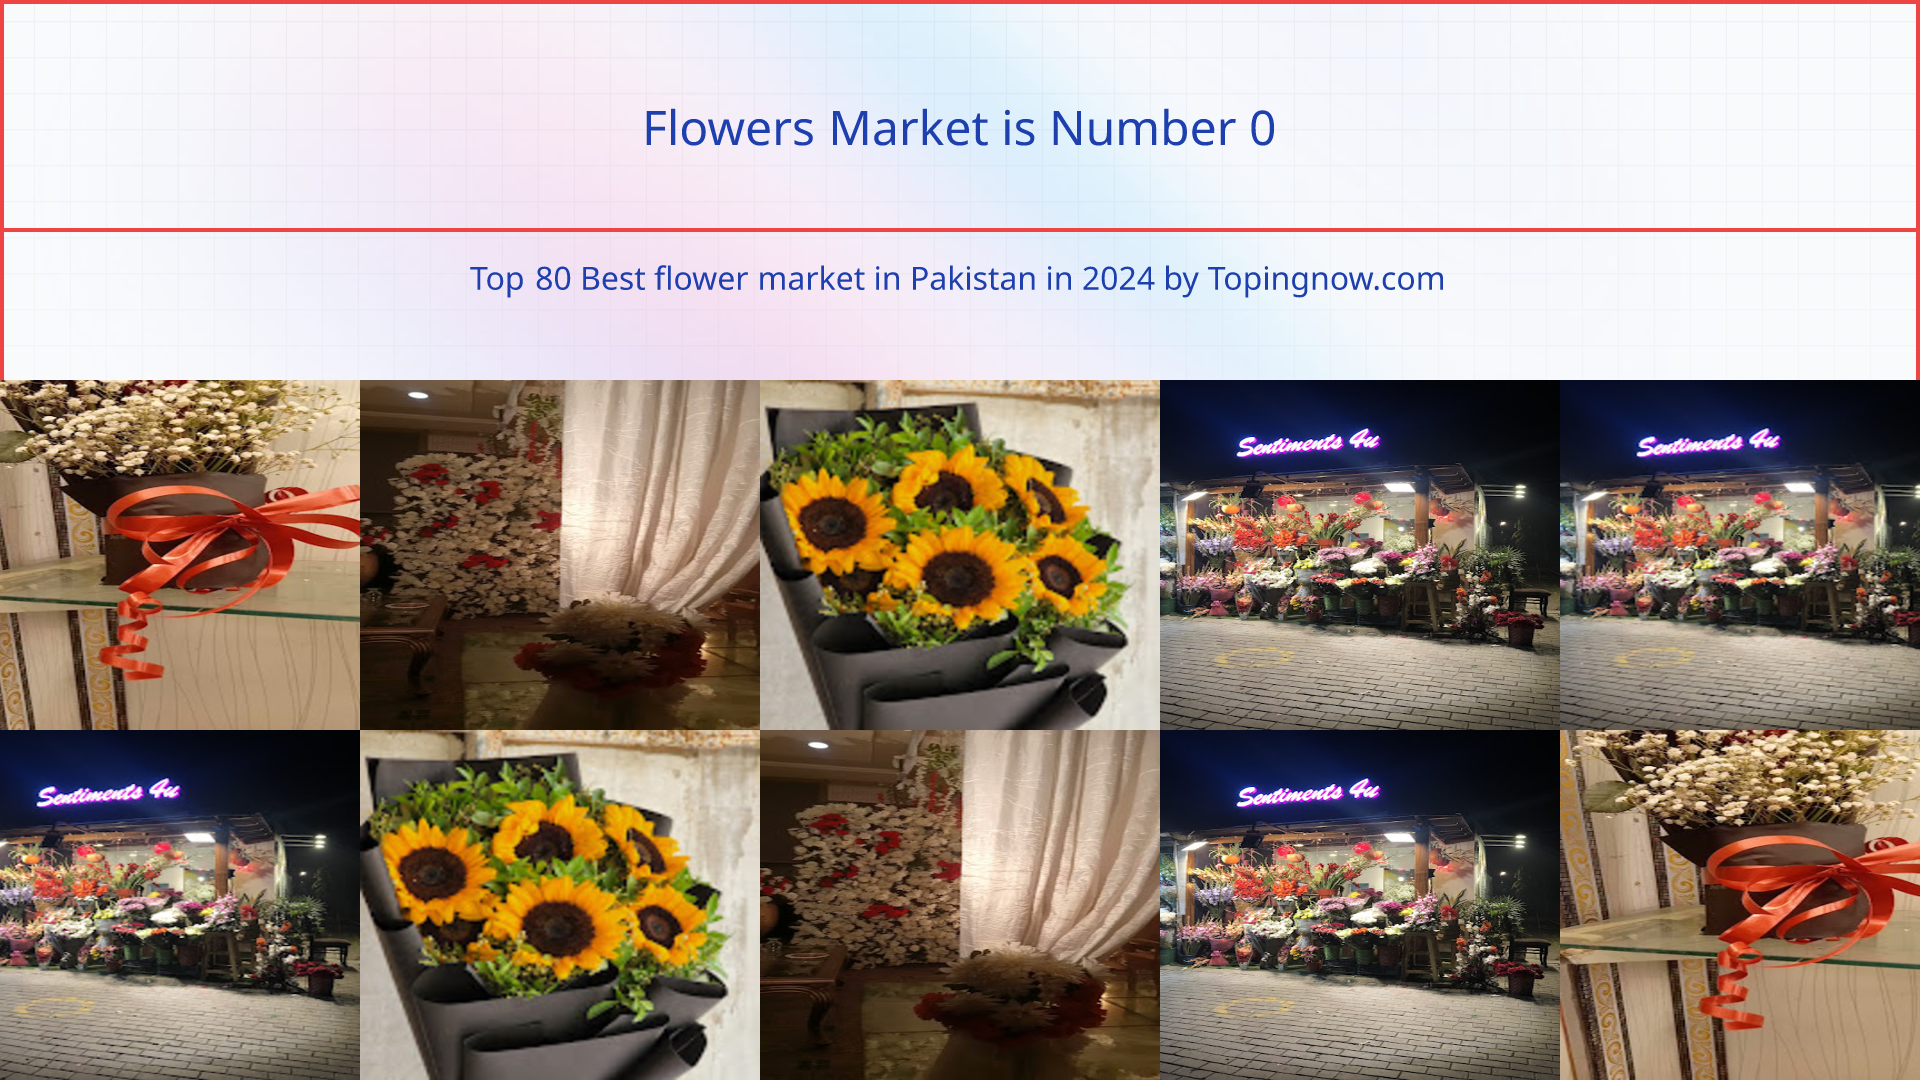 Flowers Market: Top 80 Best flower market in Pakistan in 2024